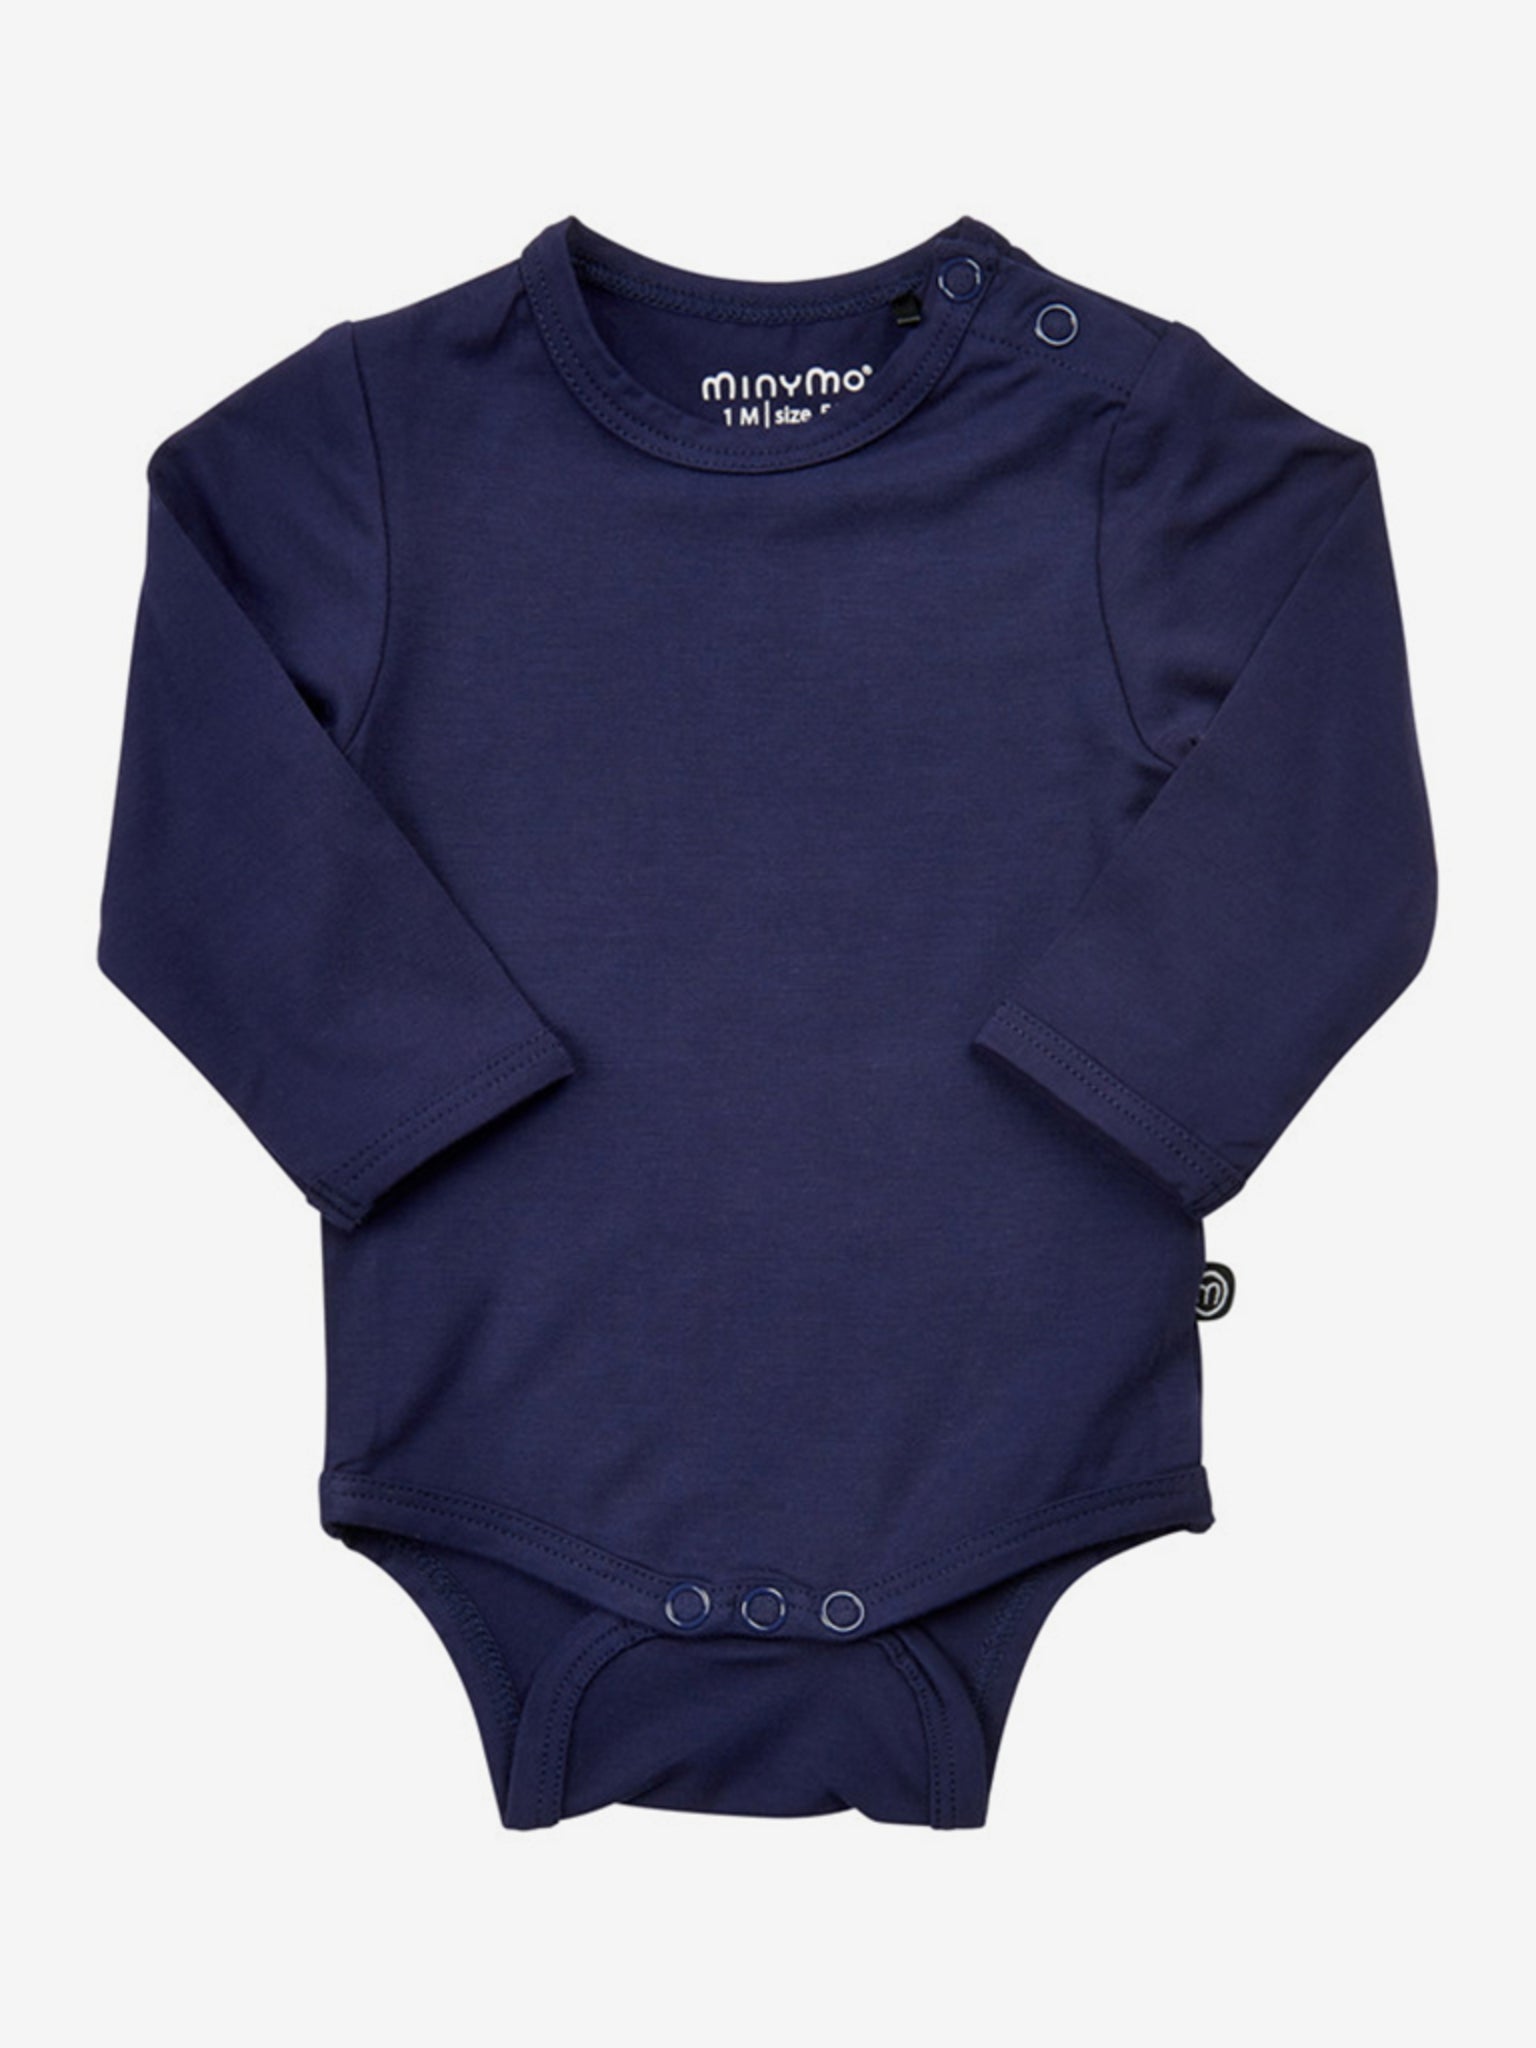 Wunderschöner Baby Body in dunkelblau von Minymo.